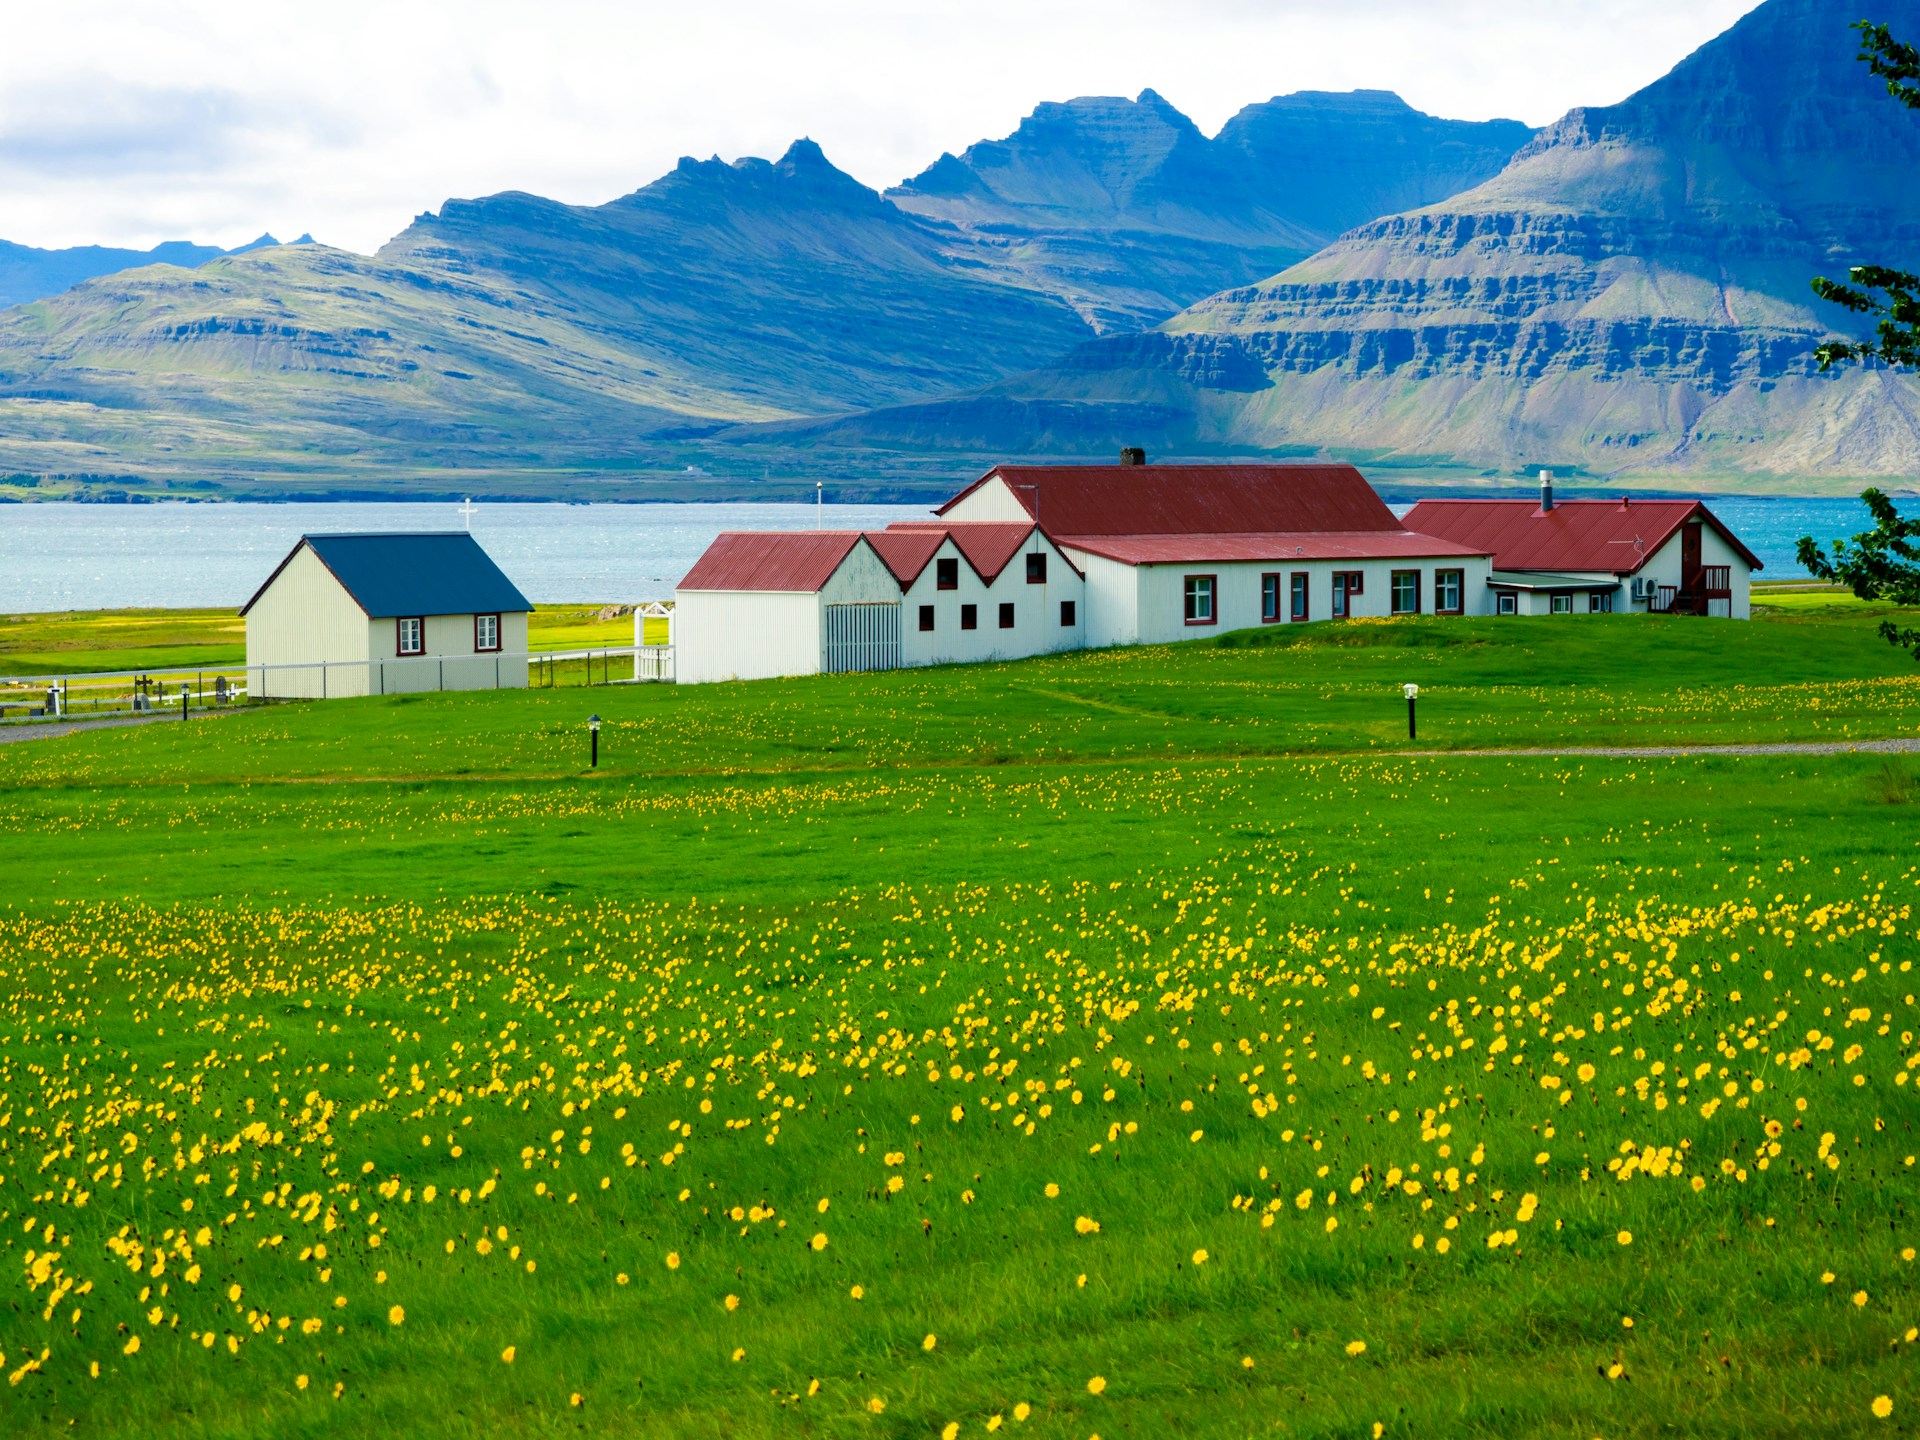 Isafjordur, Iceland Sets Daily Cruise Ship Passenger Limits